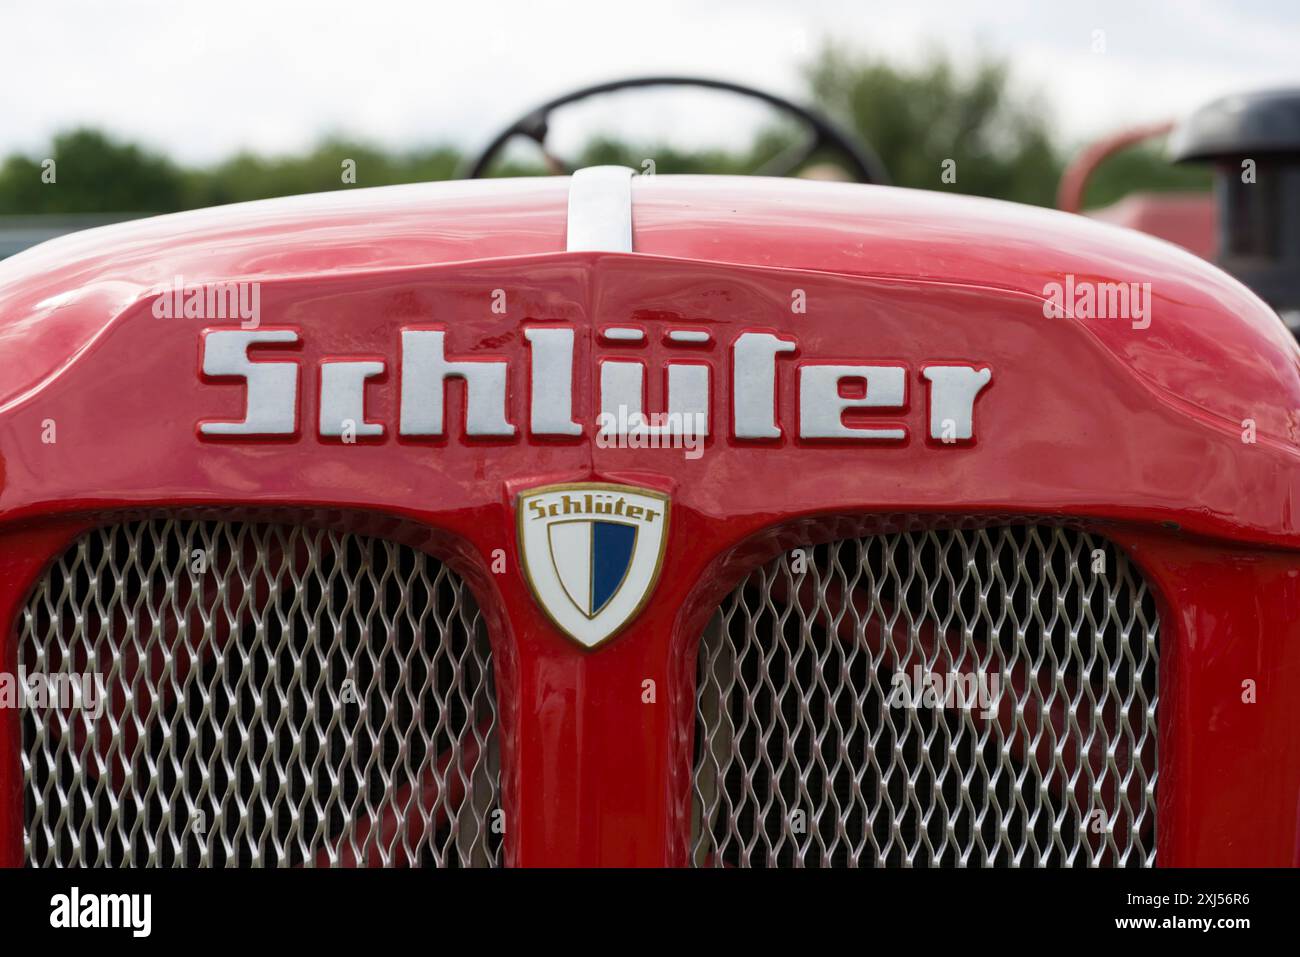 Tracteur Schlueter, lettrage et logo de la société sur le capot peint en rouge, Offenbach, Dreieich, Hesse, Allemagne Banque D'Images